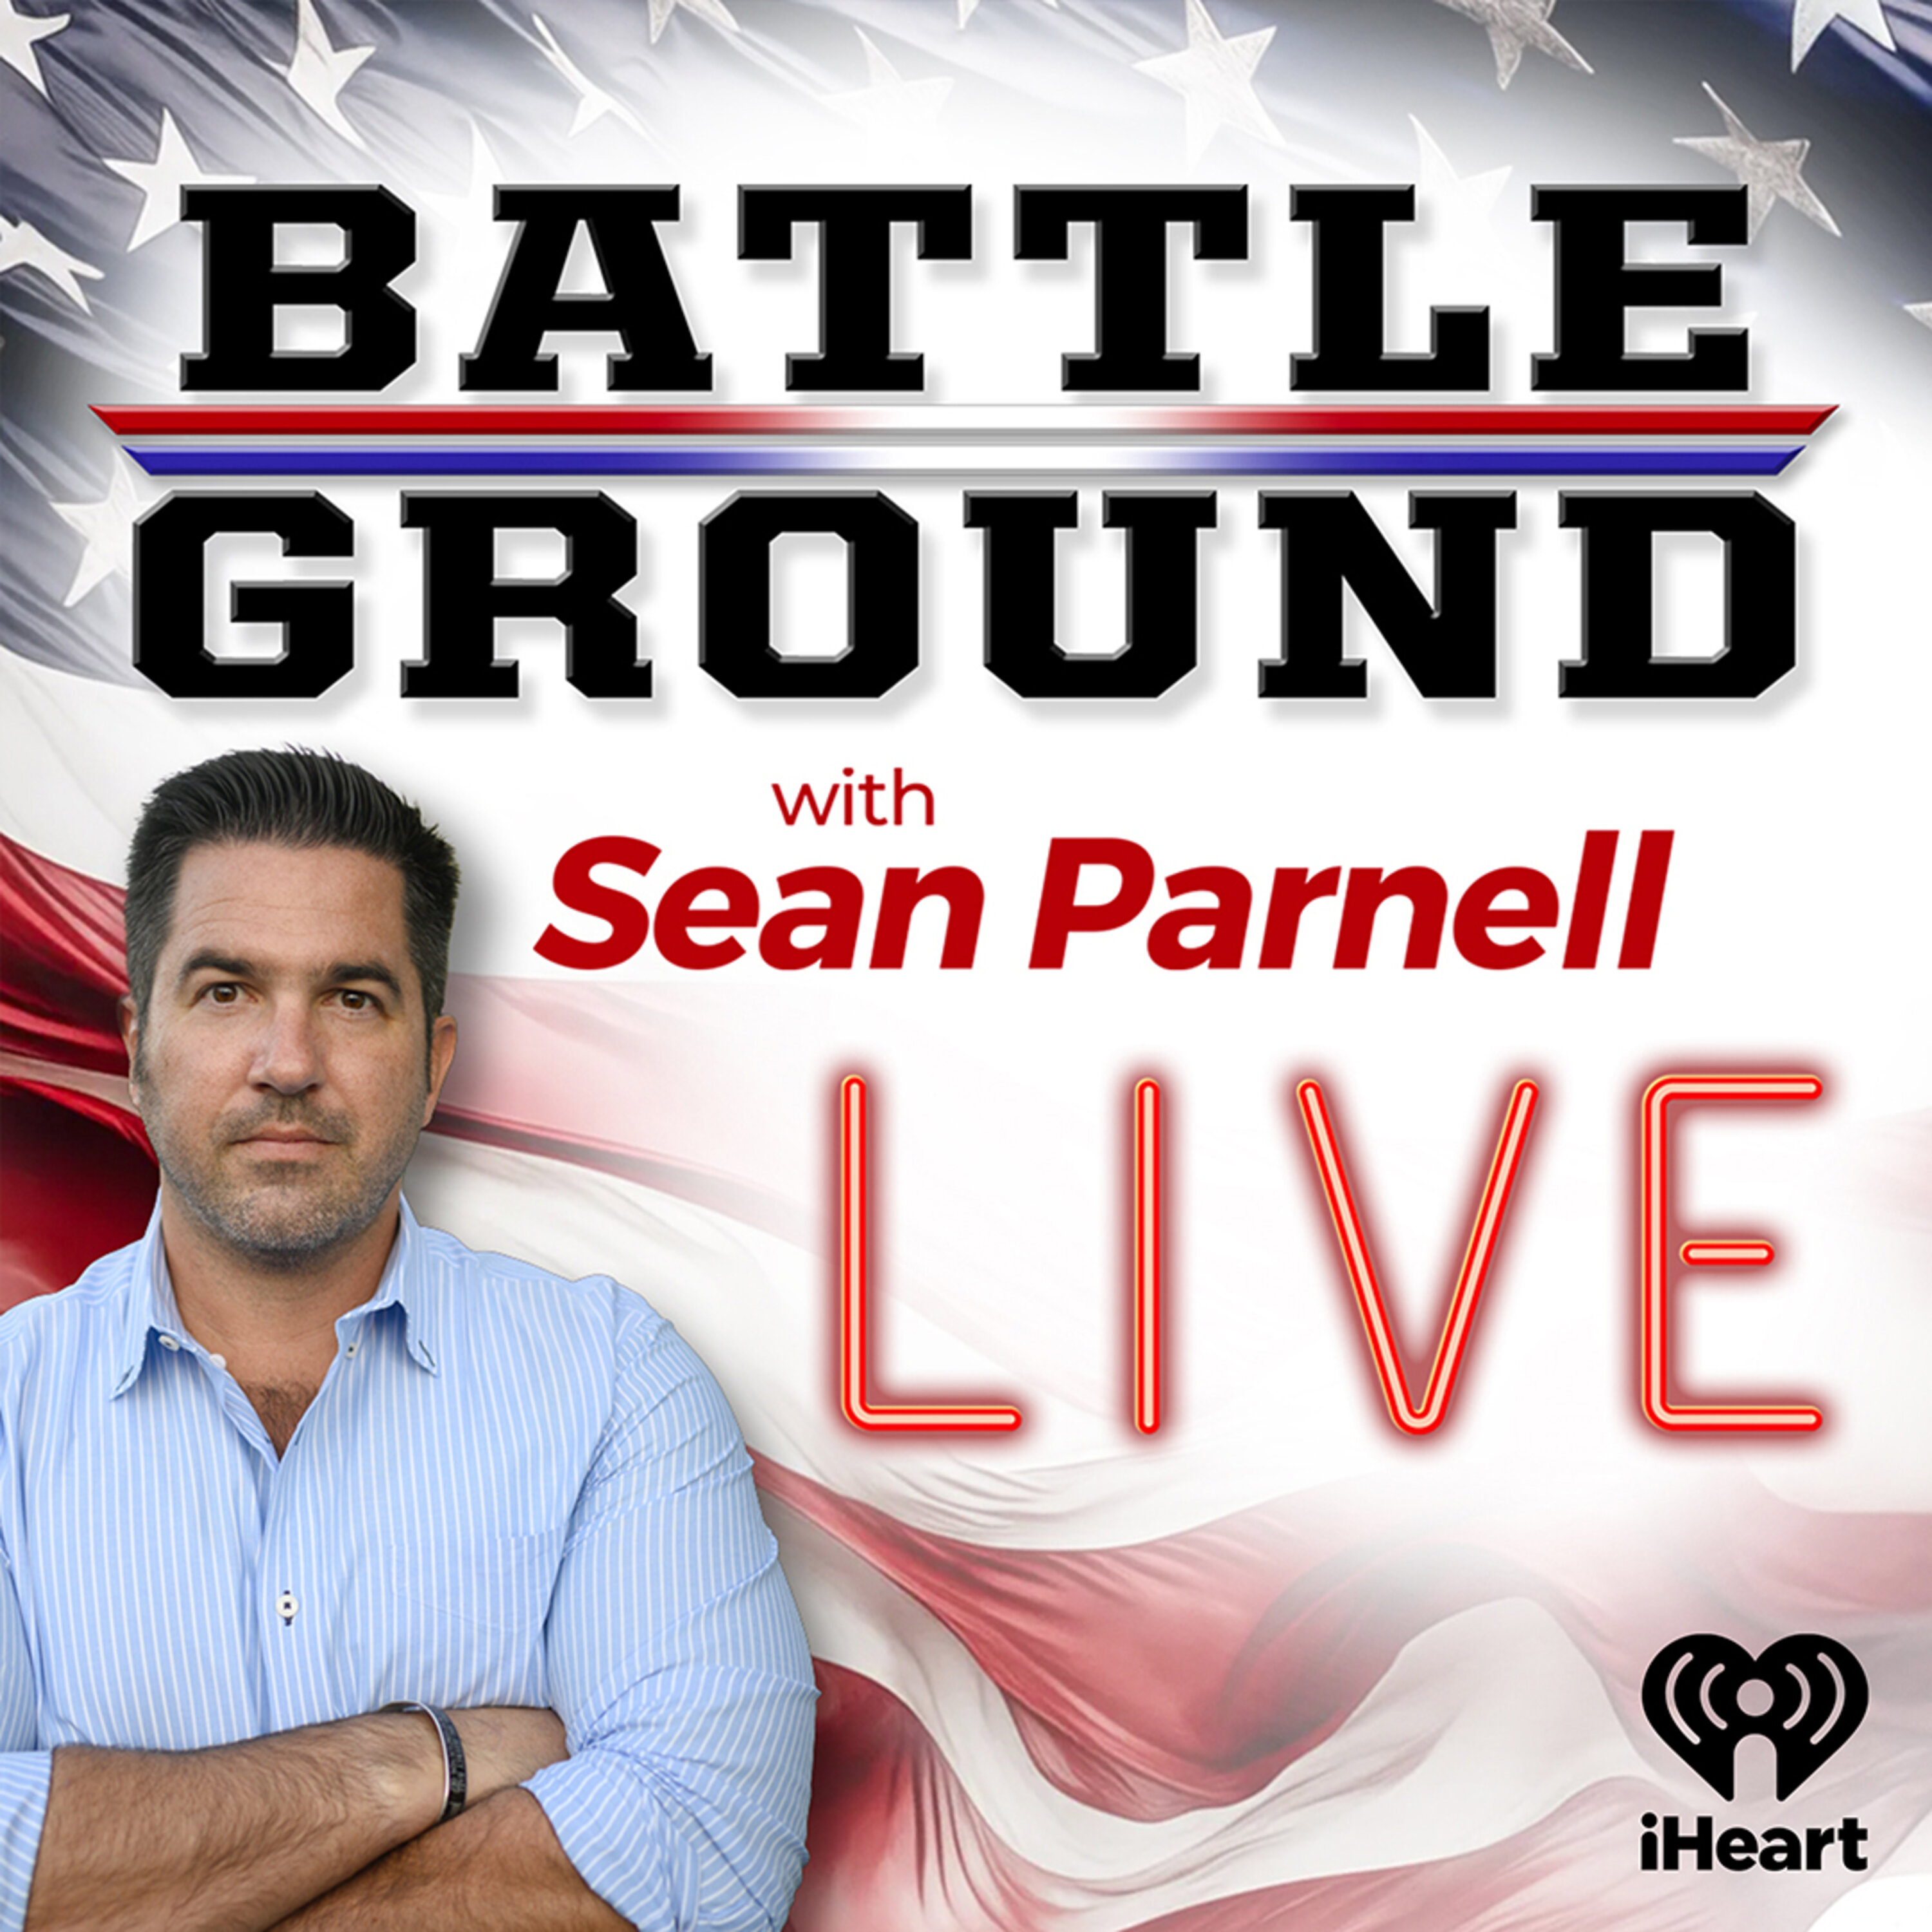 Battleground LIVE: Democrat Criminal Conspiracy w/ Savage Rich Baris